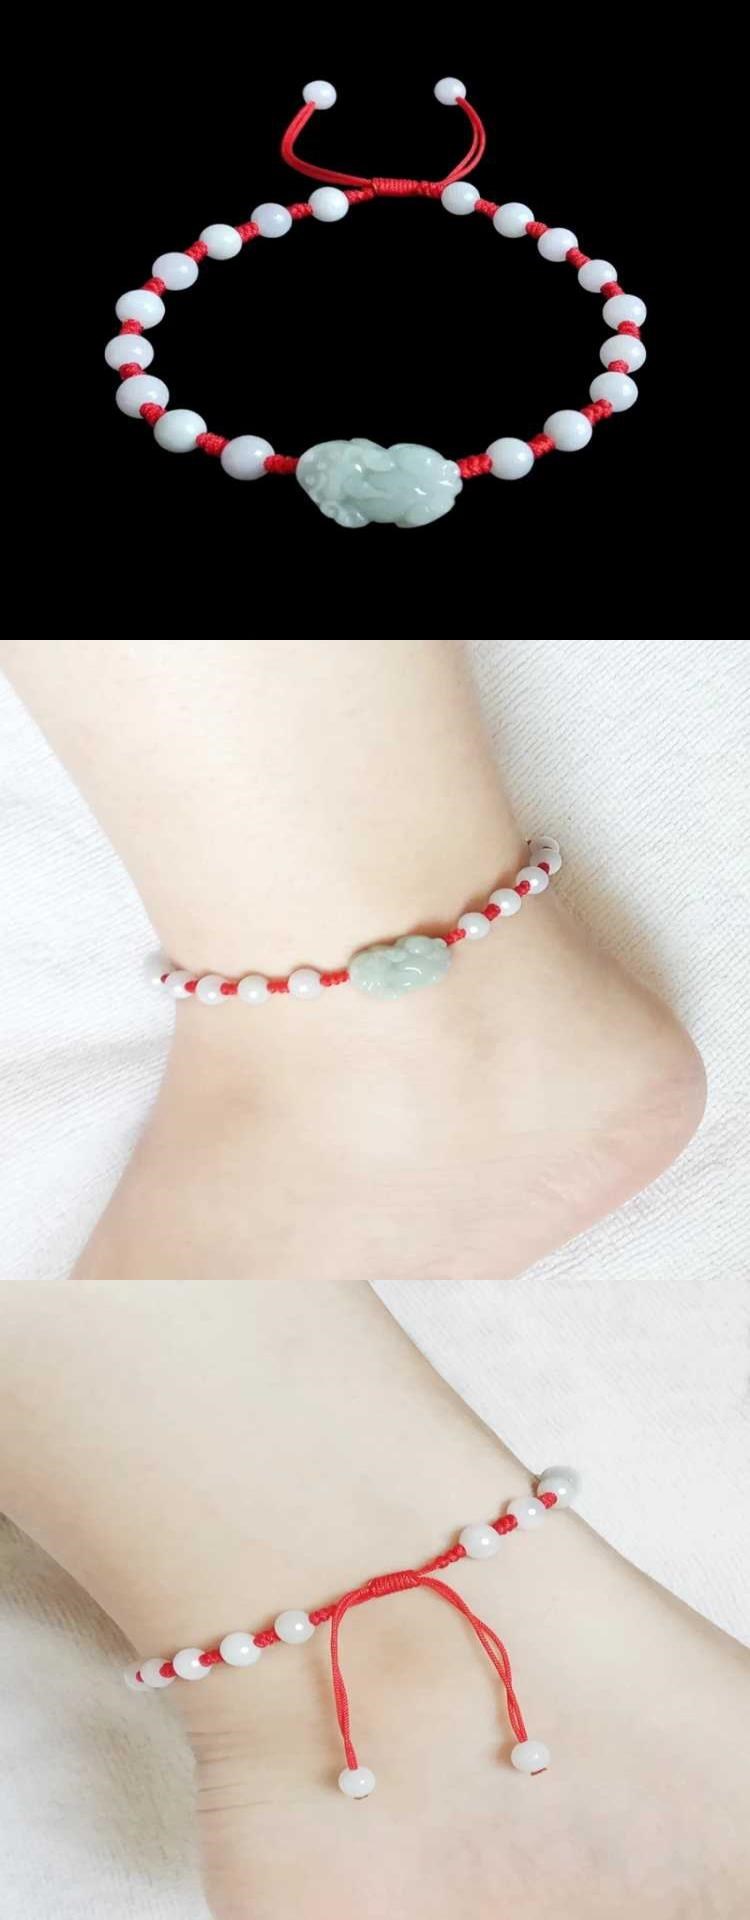 Red String Bracelet Anklet Pixiu SpongeBob Jewelry cho bạn gái Quà tặng sinh nhật cho bạn gái - Vòng chân